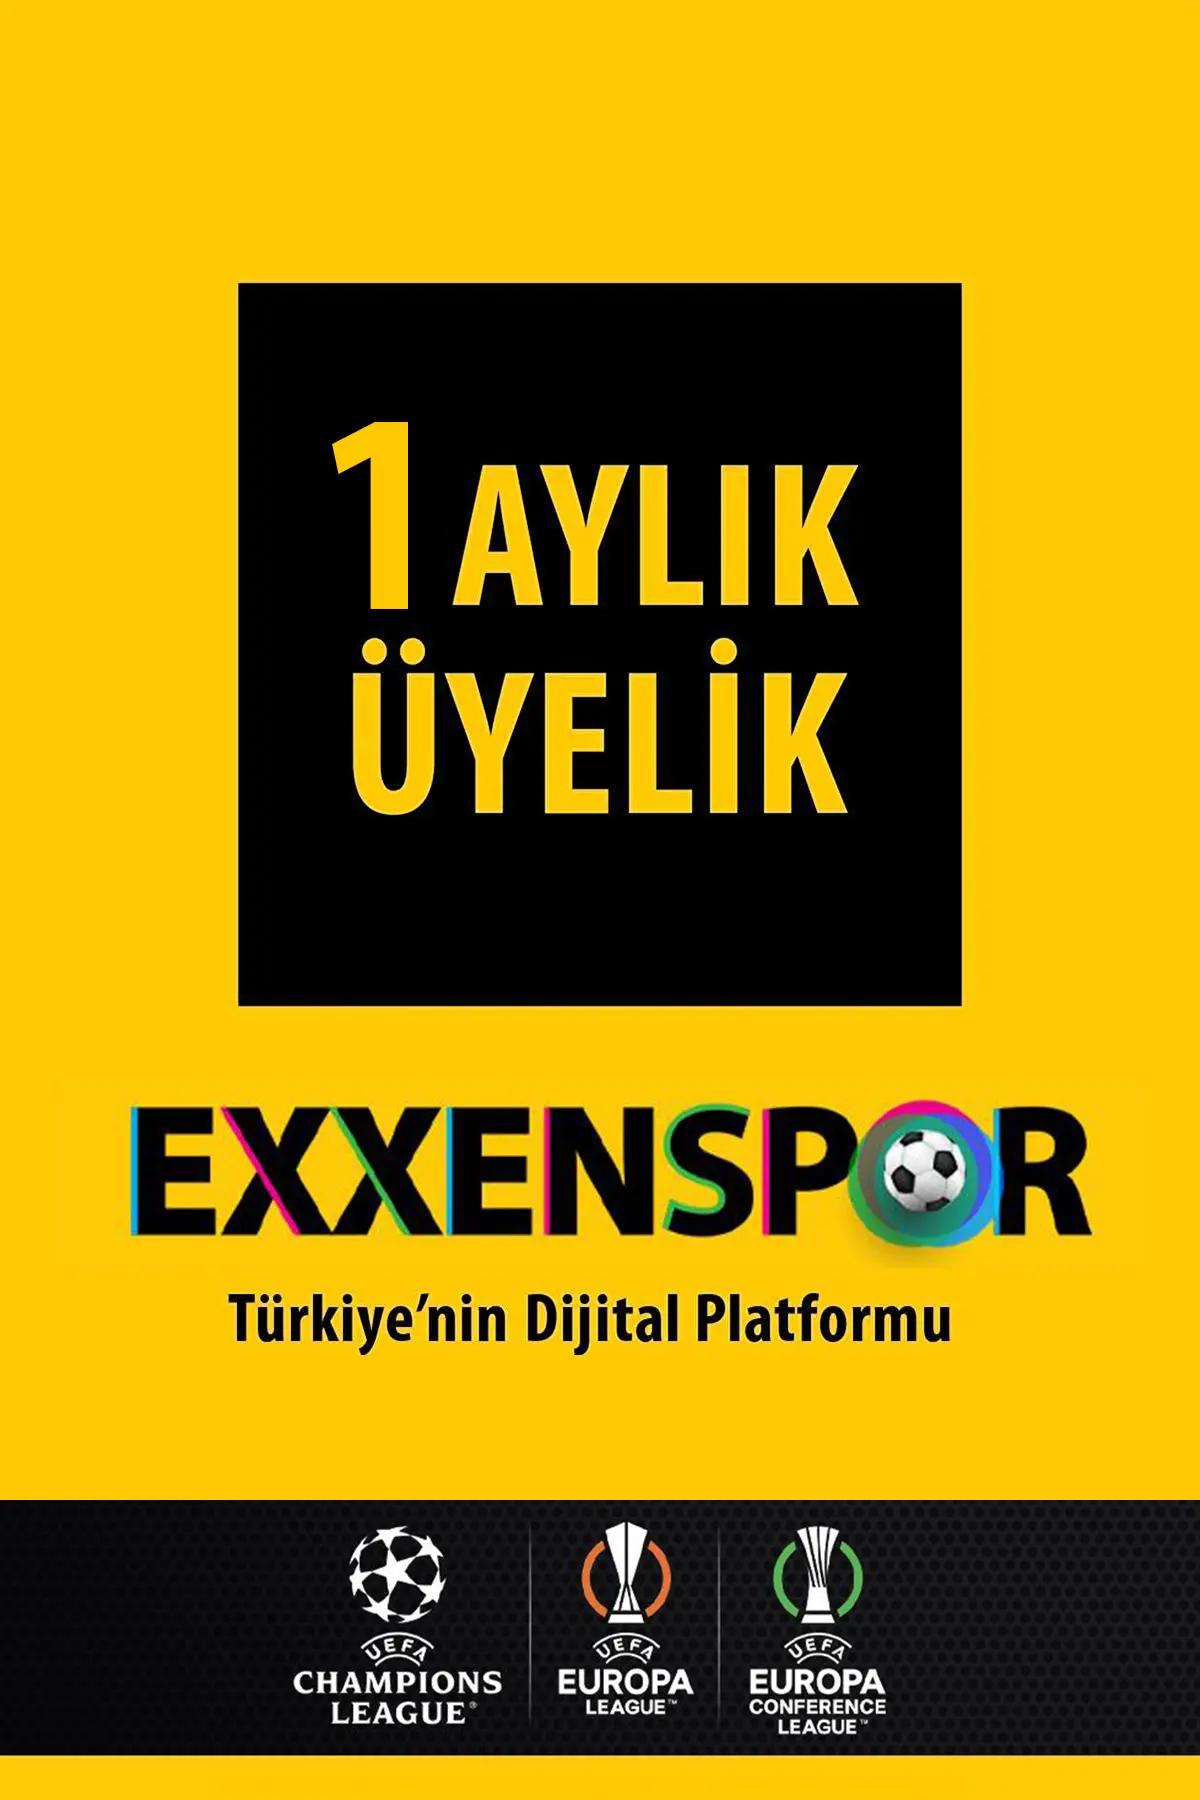 Exxenspor 1 Aylık Üyelik Kodu - Reklamsız